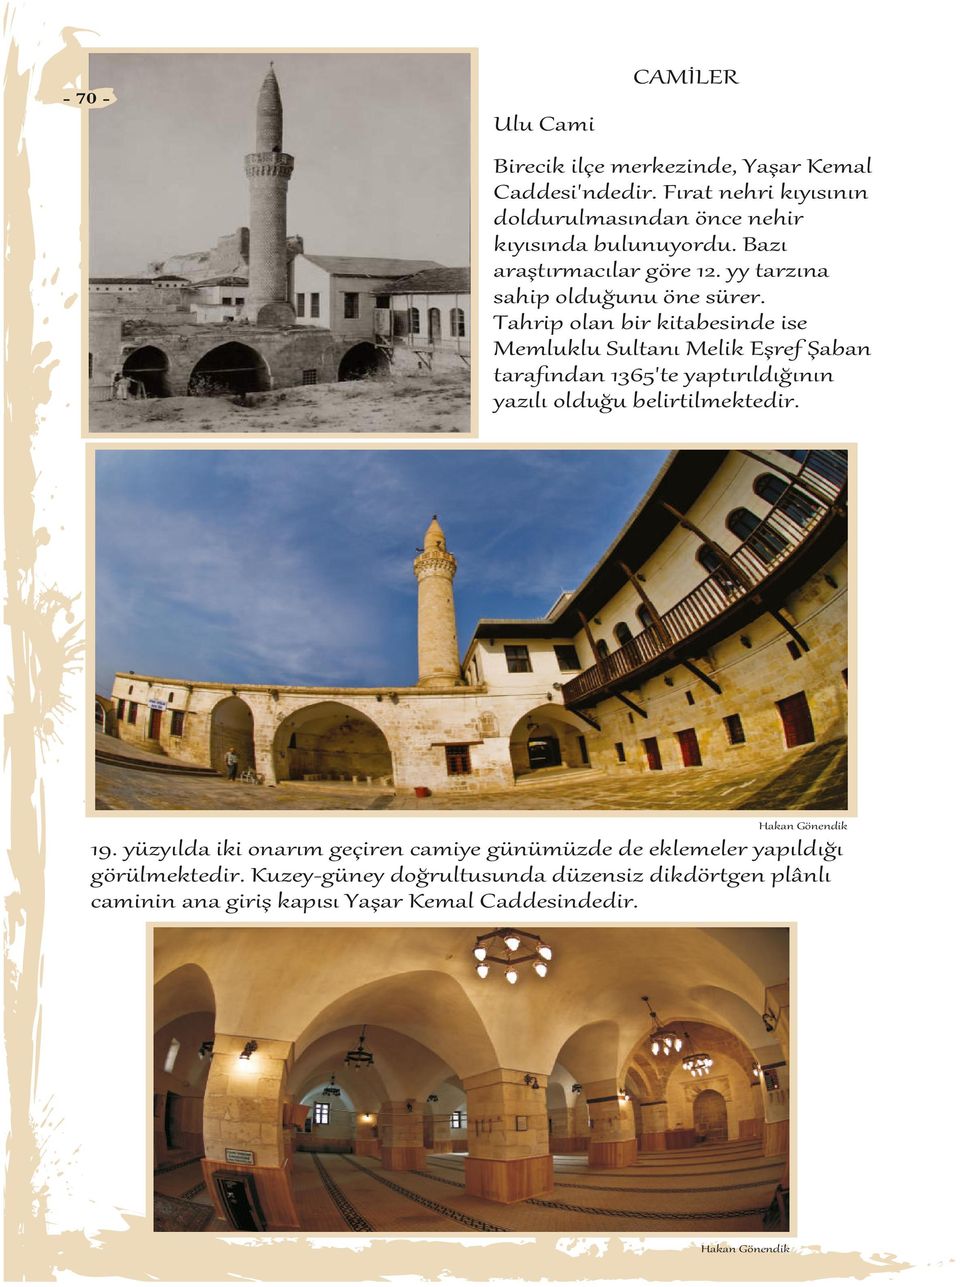 Tahrip olan bir kitabesinde ise Memluklu Sultanı Melik Eşref Şaban tarafından 1365'te yaptırıldığının yazılı olduğu belirtilmektedir.